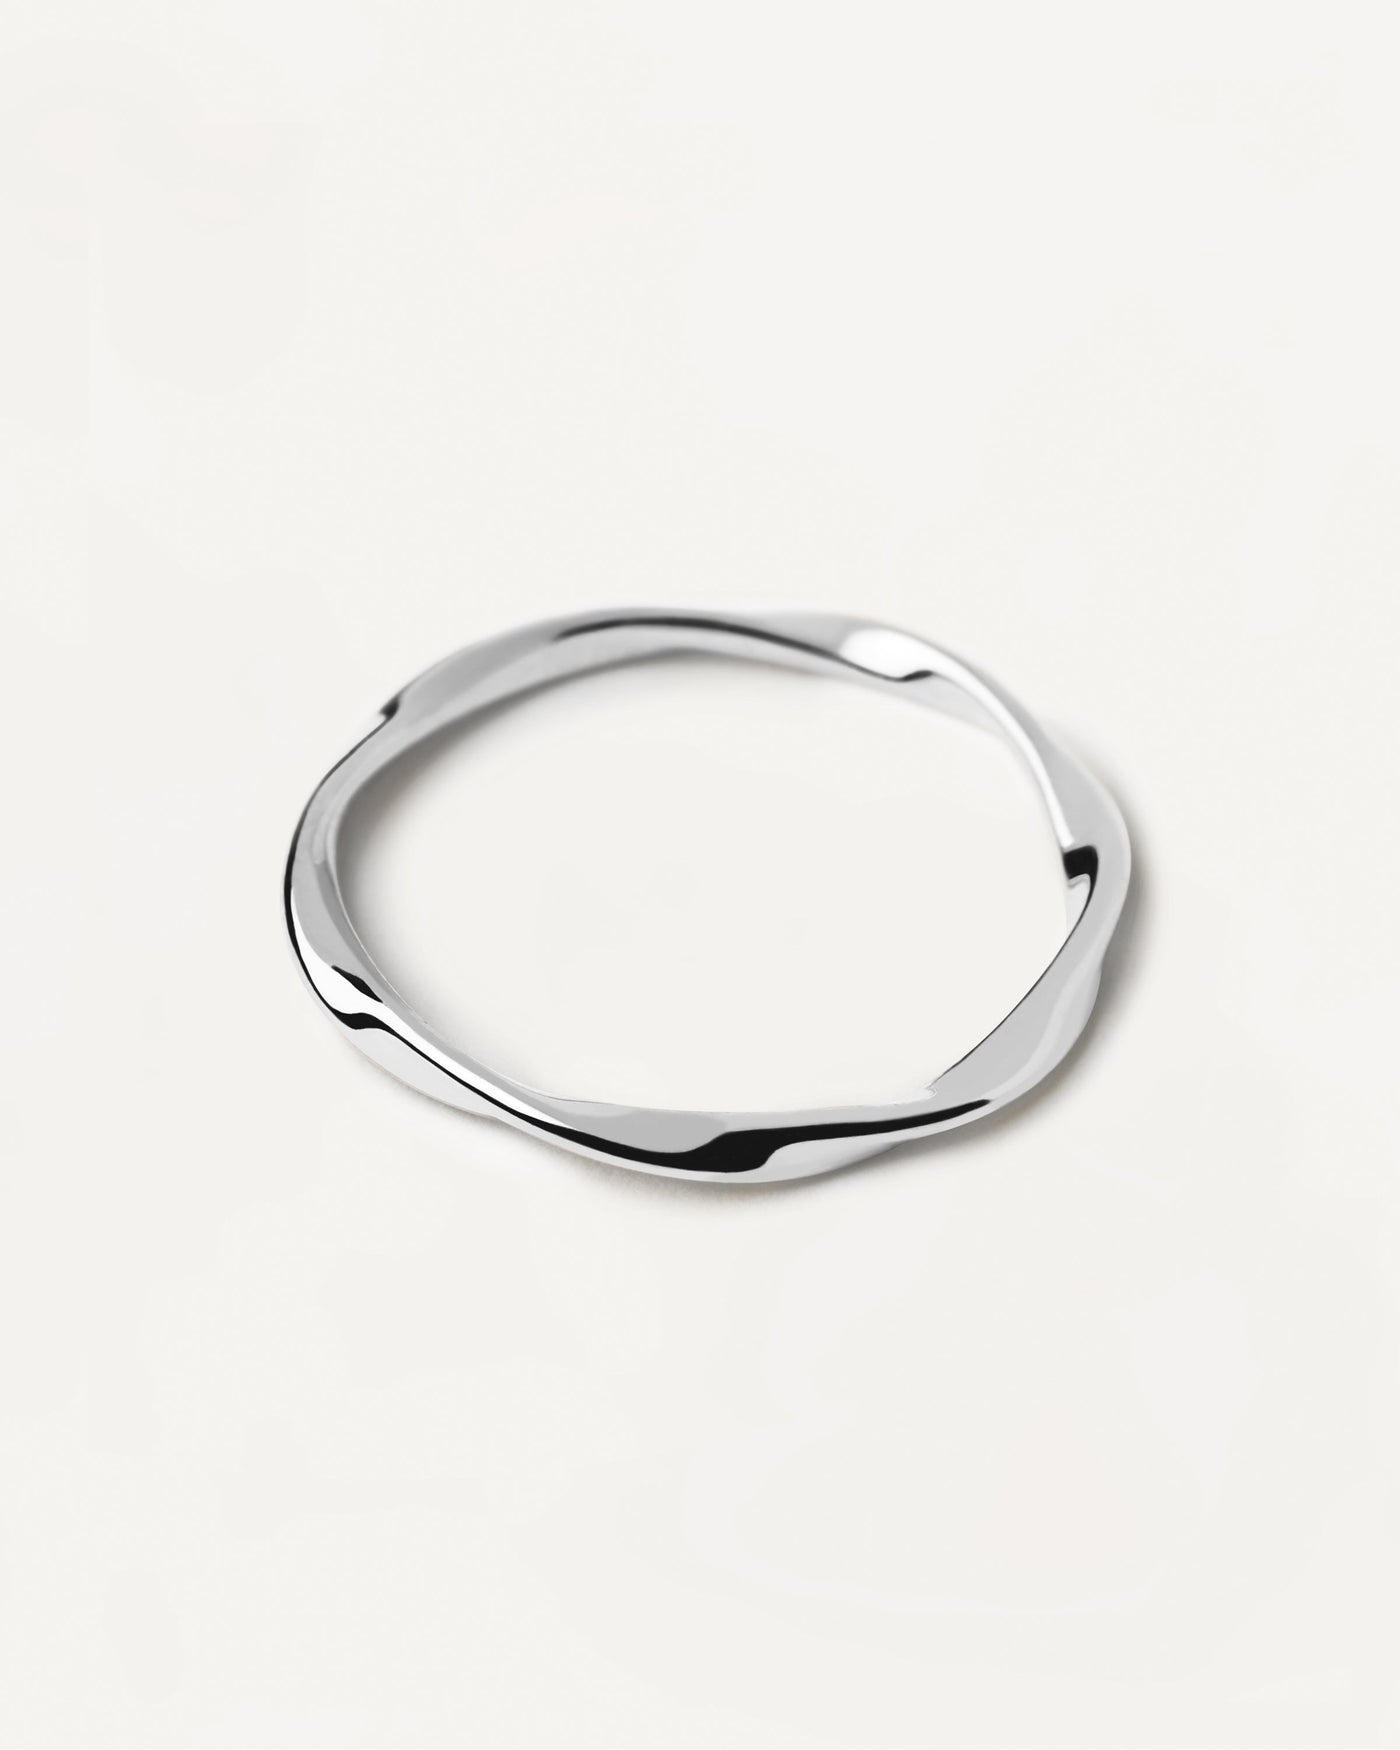 Spiral Silberring. Gedrehter Ring aus Sterlingsilber. Erhalten Sie die neuesten Produkte von PDPAOLA. Geben Sie Ihre Bestellung sicher auf und erhalten Sie diesen Bestseller.